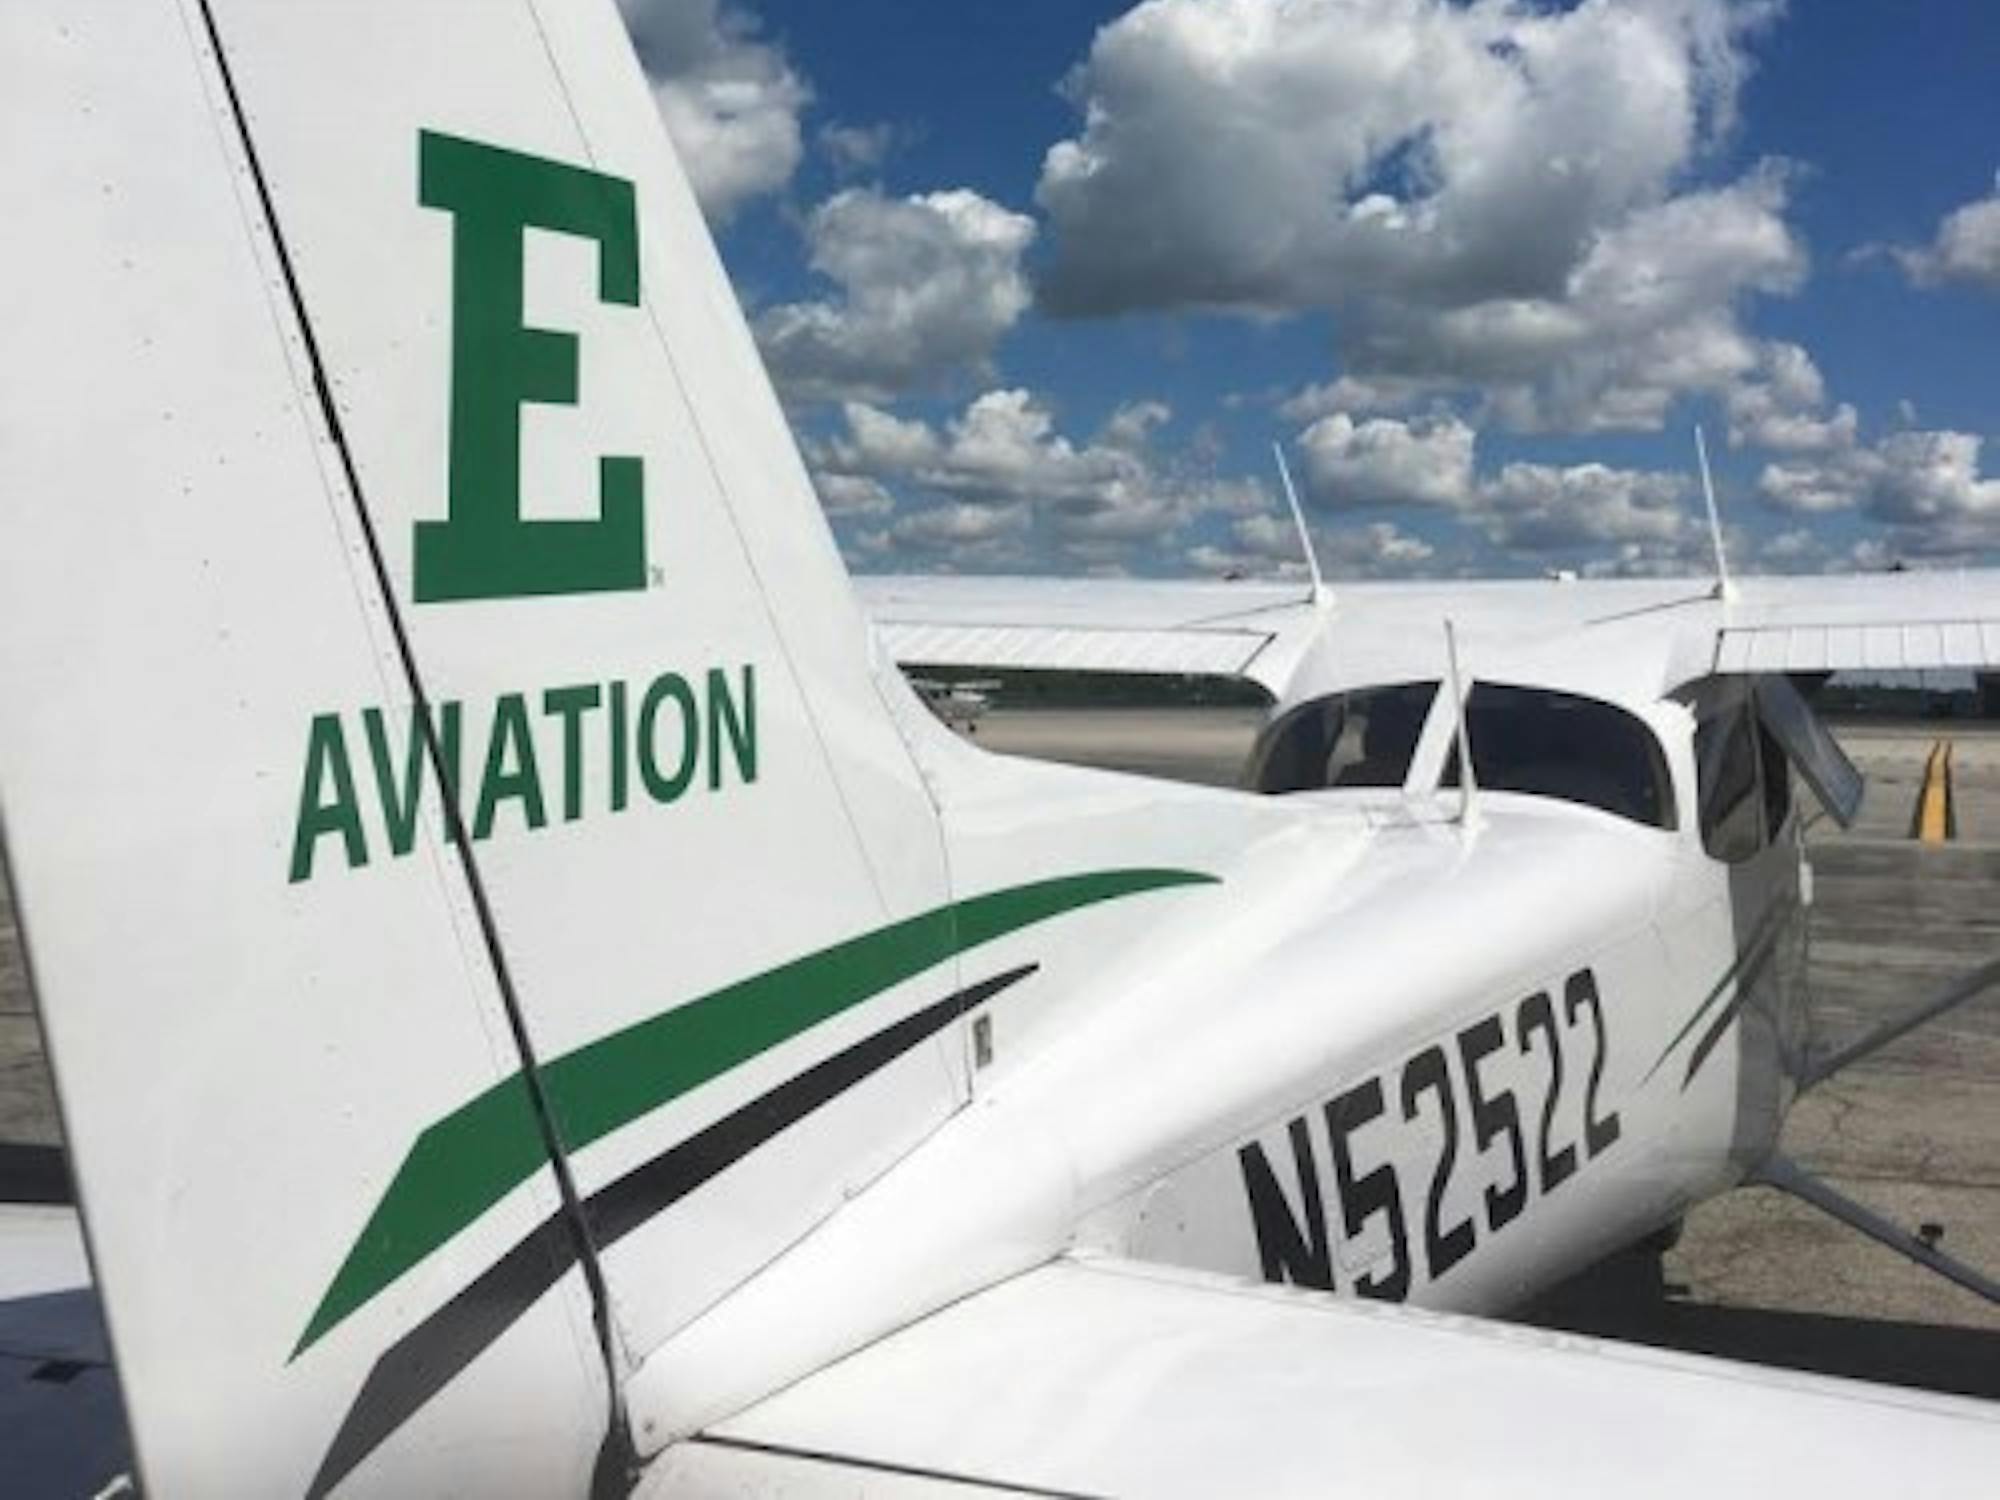 EMU aviation program plane N525322